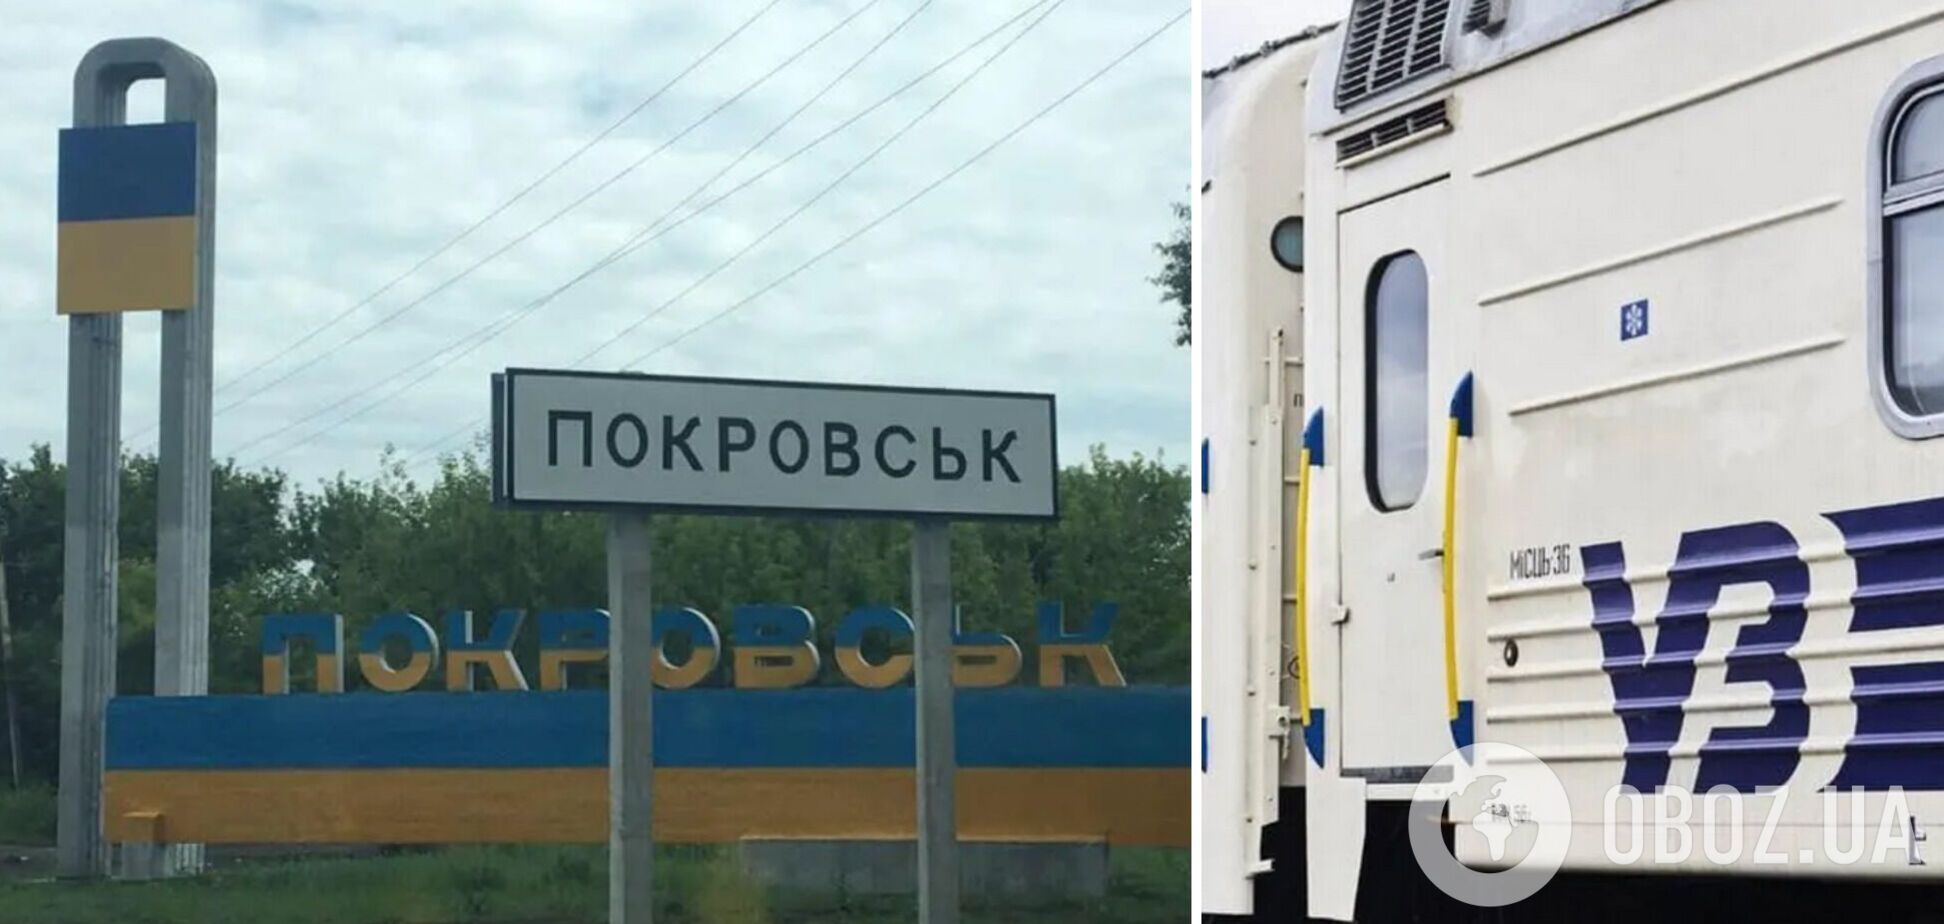 'Укрзалізниця' продает билеты на регулярные рейсы в Донецкую область